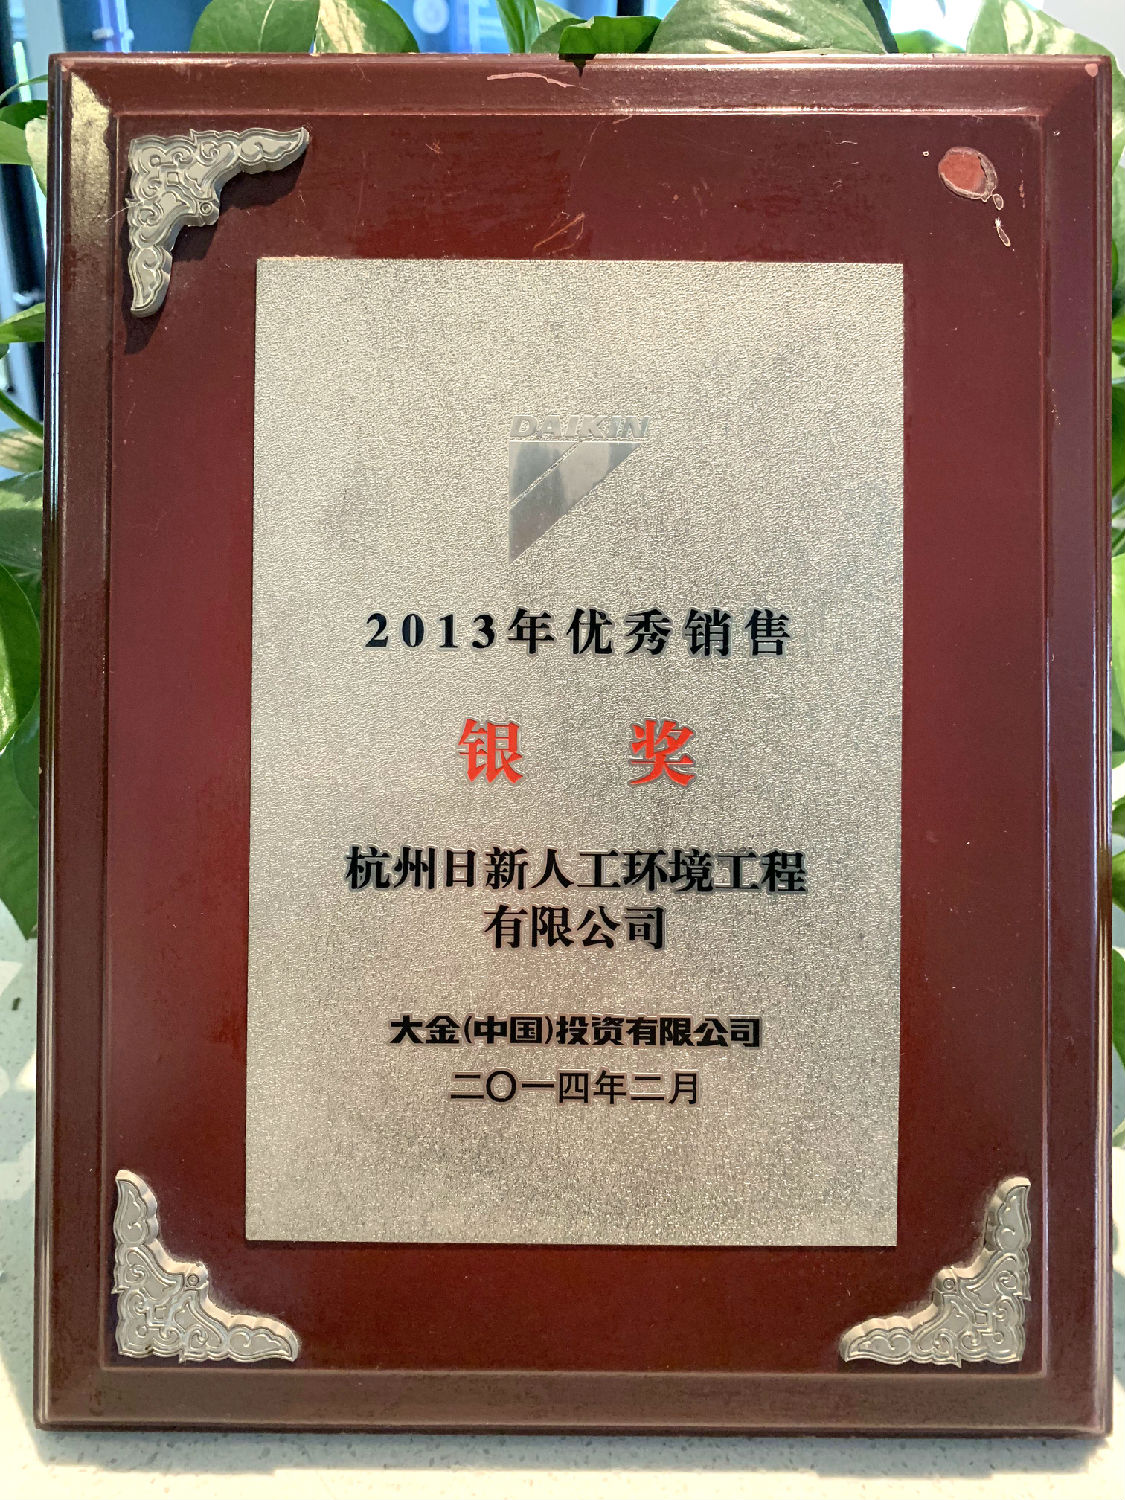 2013年日新环境荣获大金空调颁发“优秀销售银奖”